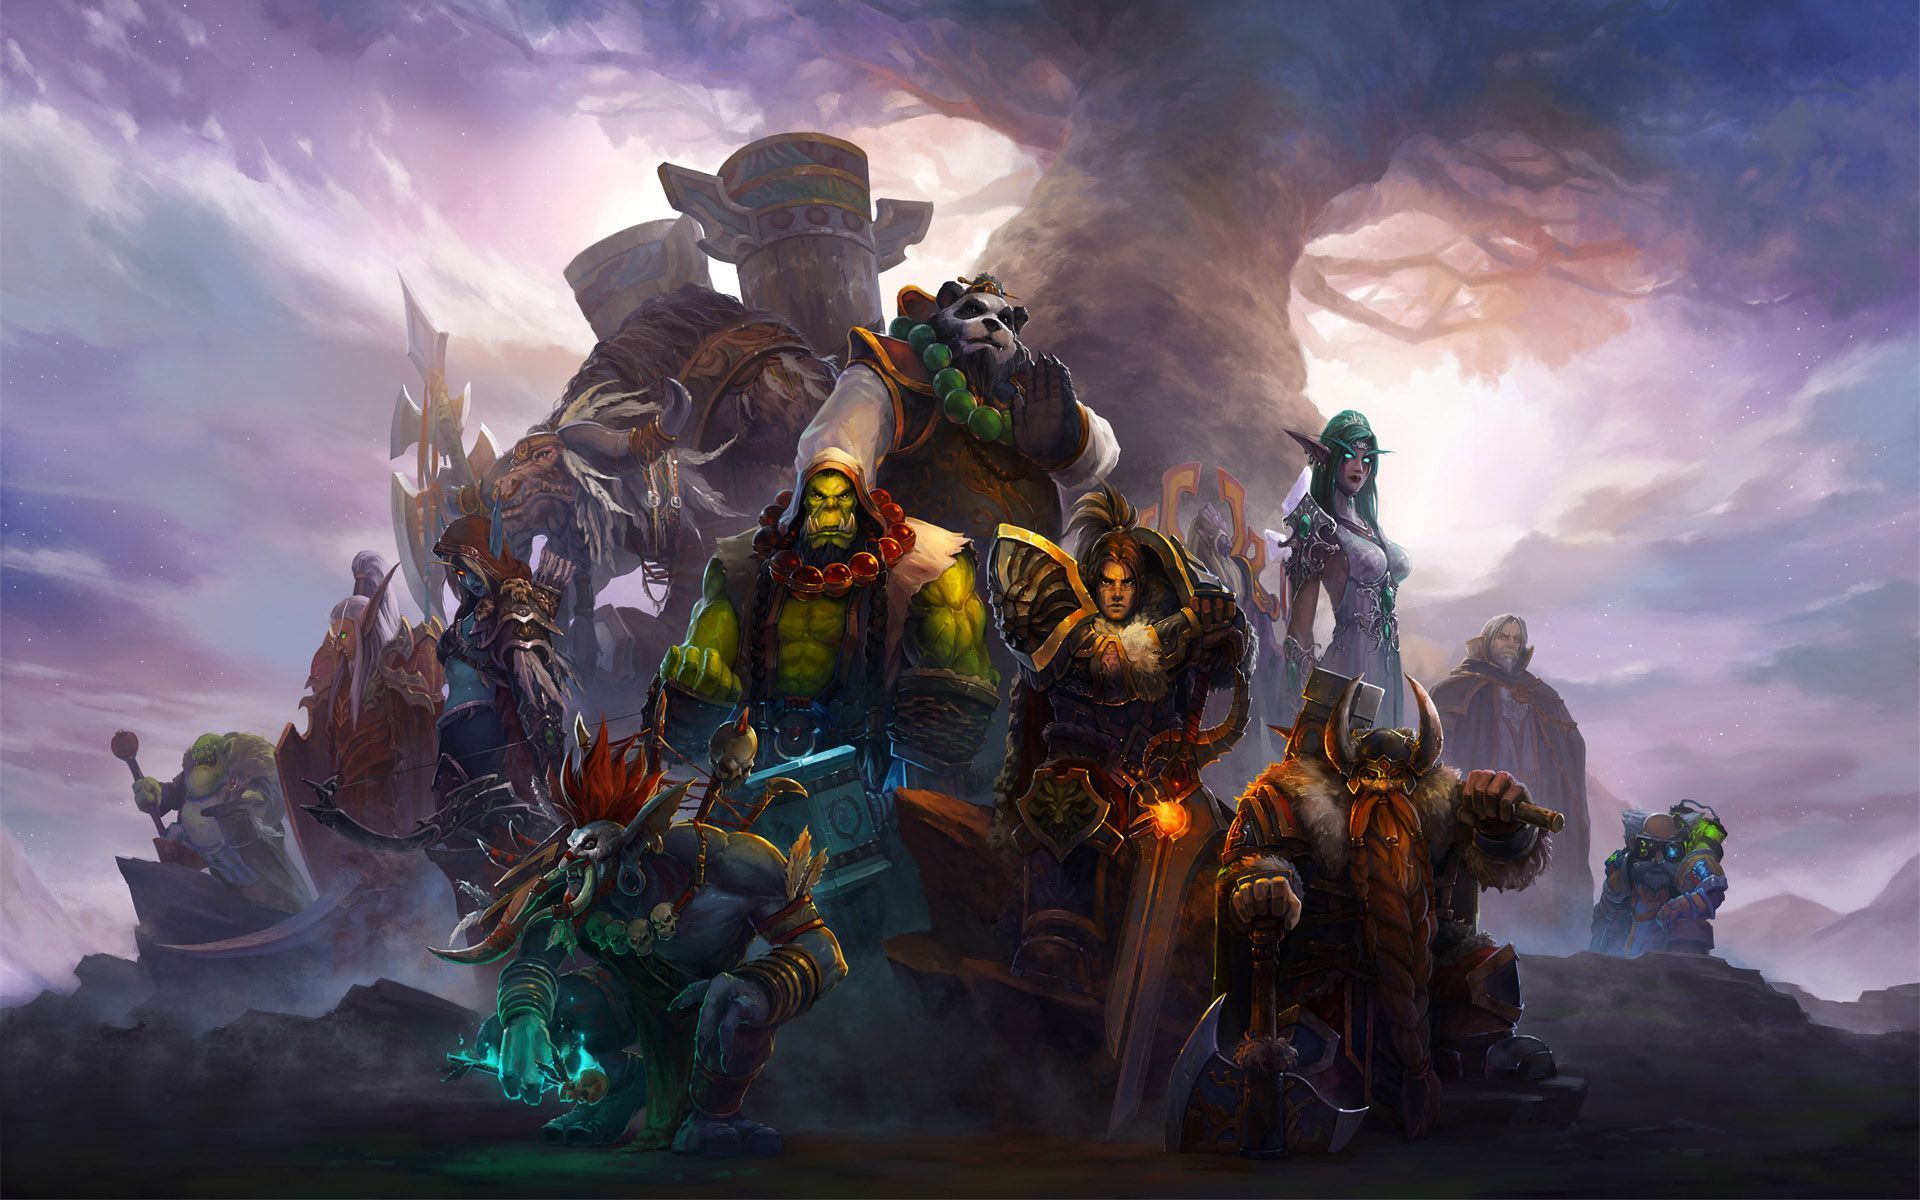 Warcraft Story: Libri, Fumetti ed il film in arrivo nel 2016!